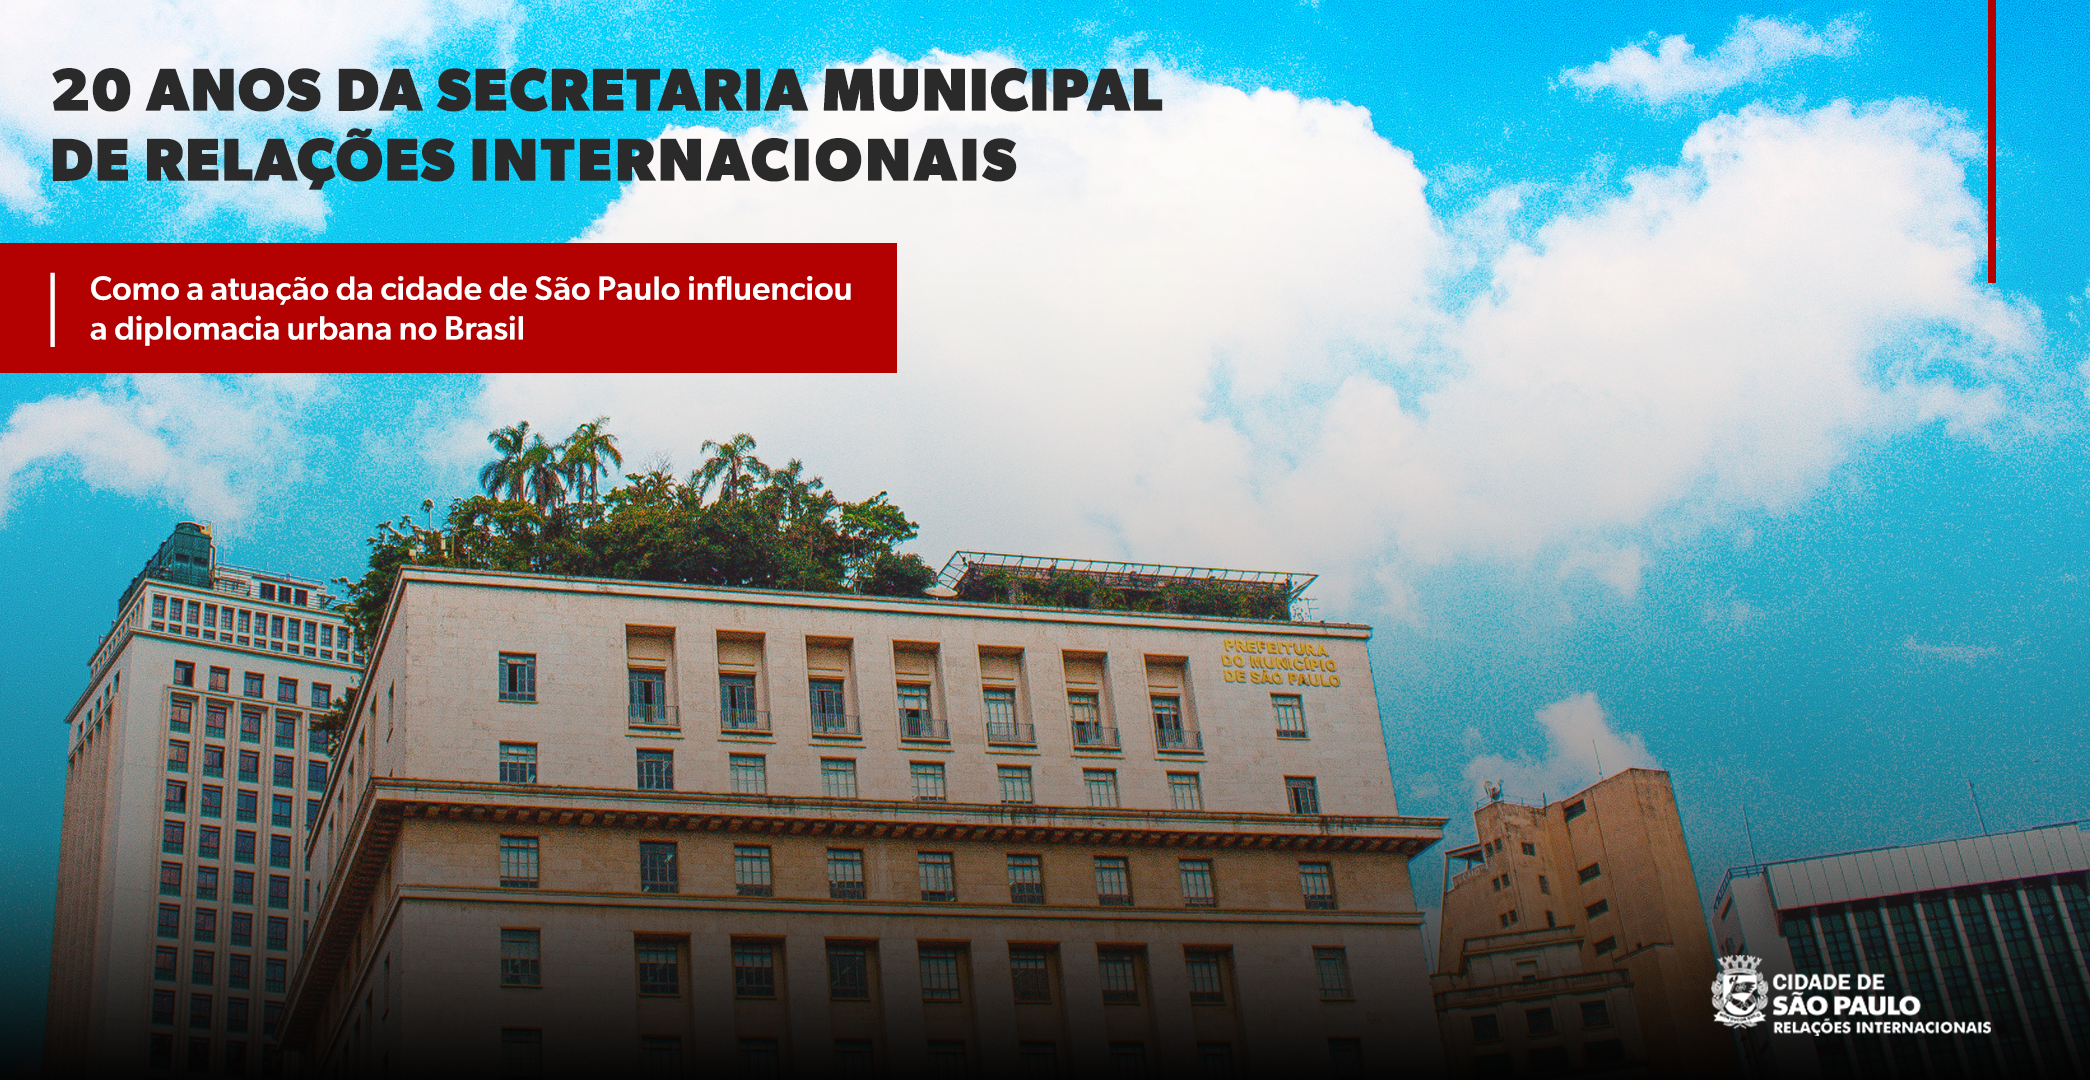 Foto da Prefeitura de São Paulo (Edifício Matarazzo), com o texto: 20 anos da Secretaria Municipal de Relações Internacionais